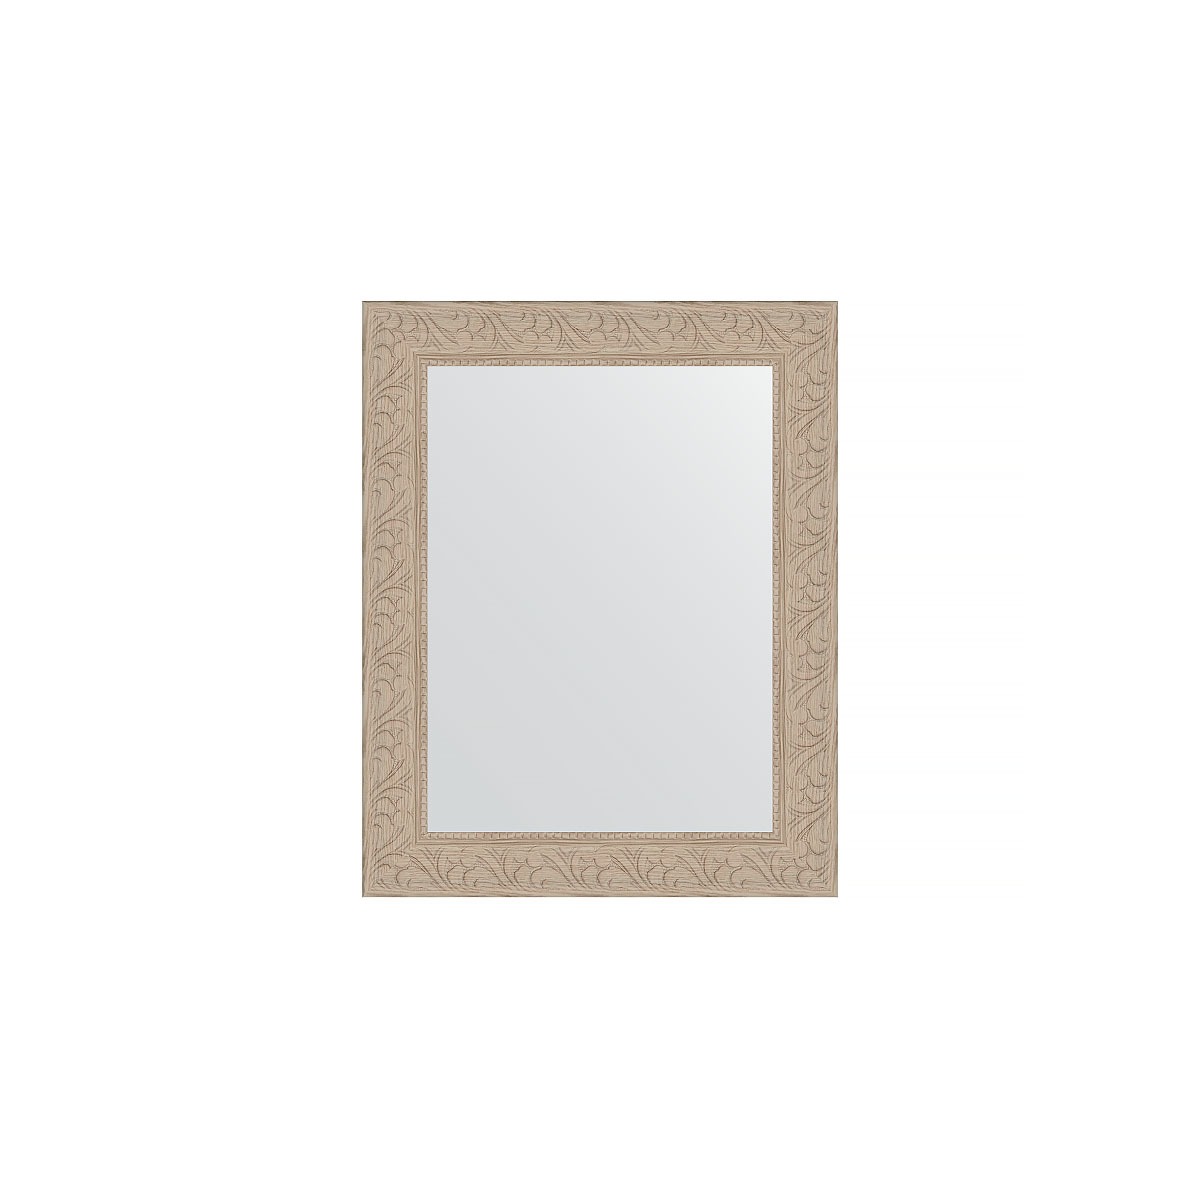 Зеркало в багетной раме Evoform беленый дуб 57 мм 40х50 см